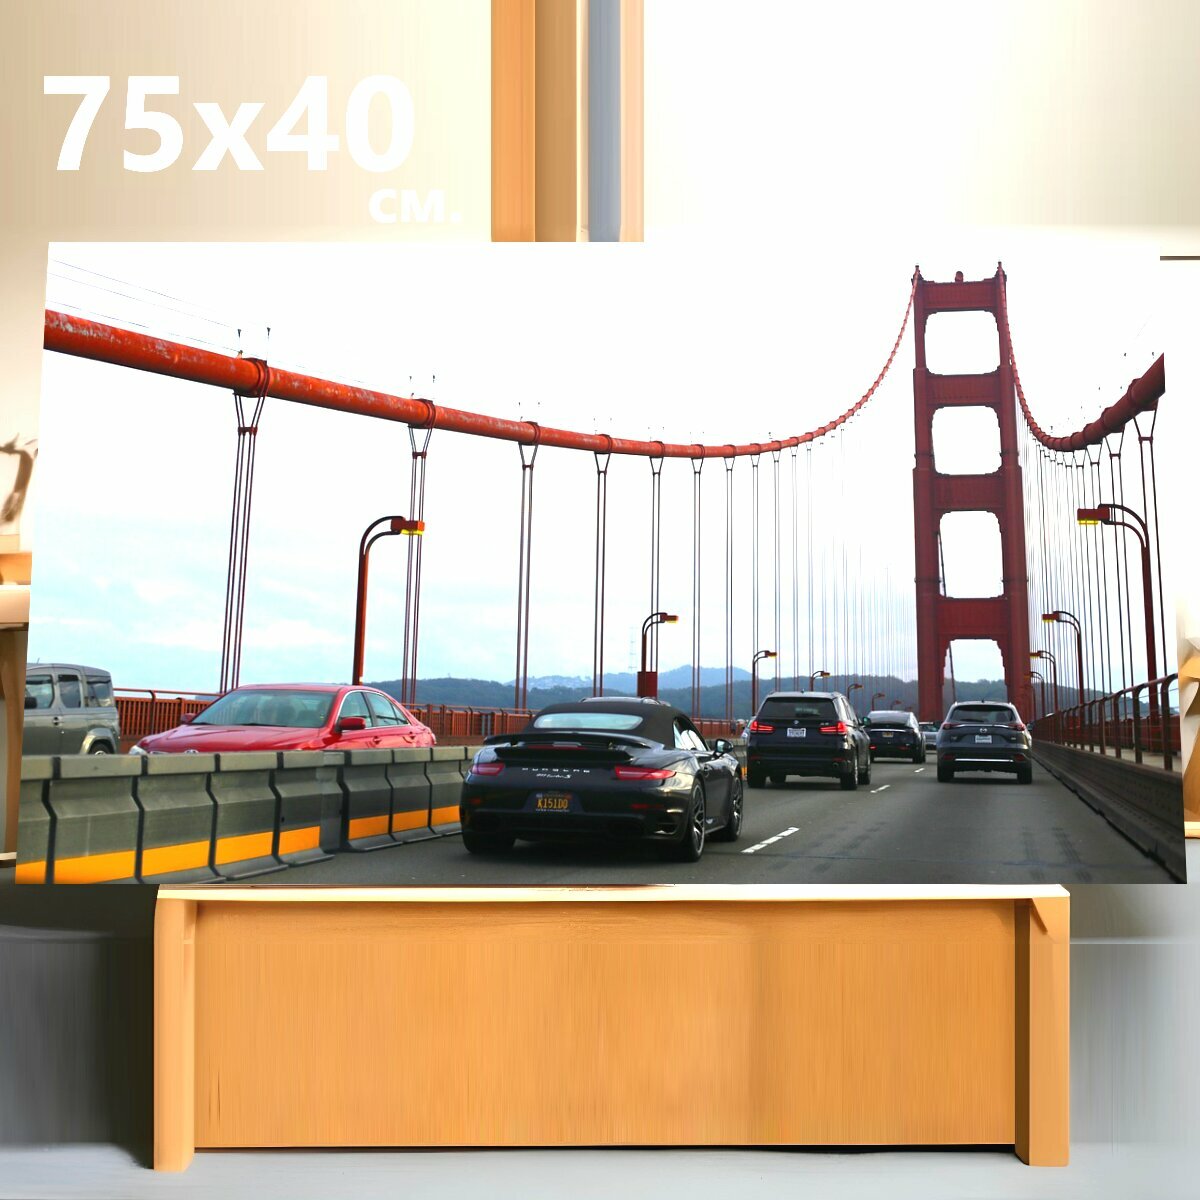 Картина на холсте "Мост, золотые ворота, структура" на подрамнике 75х40 см. для интерьера